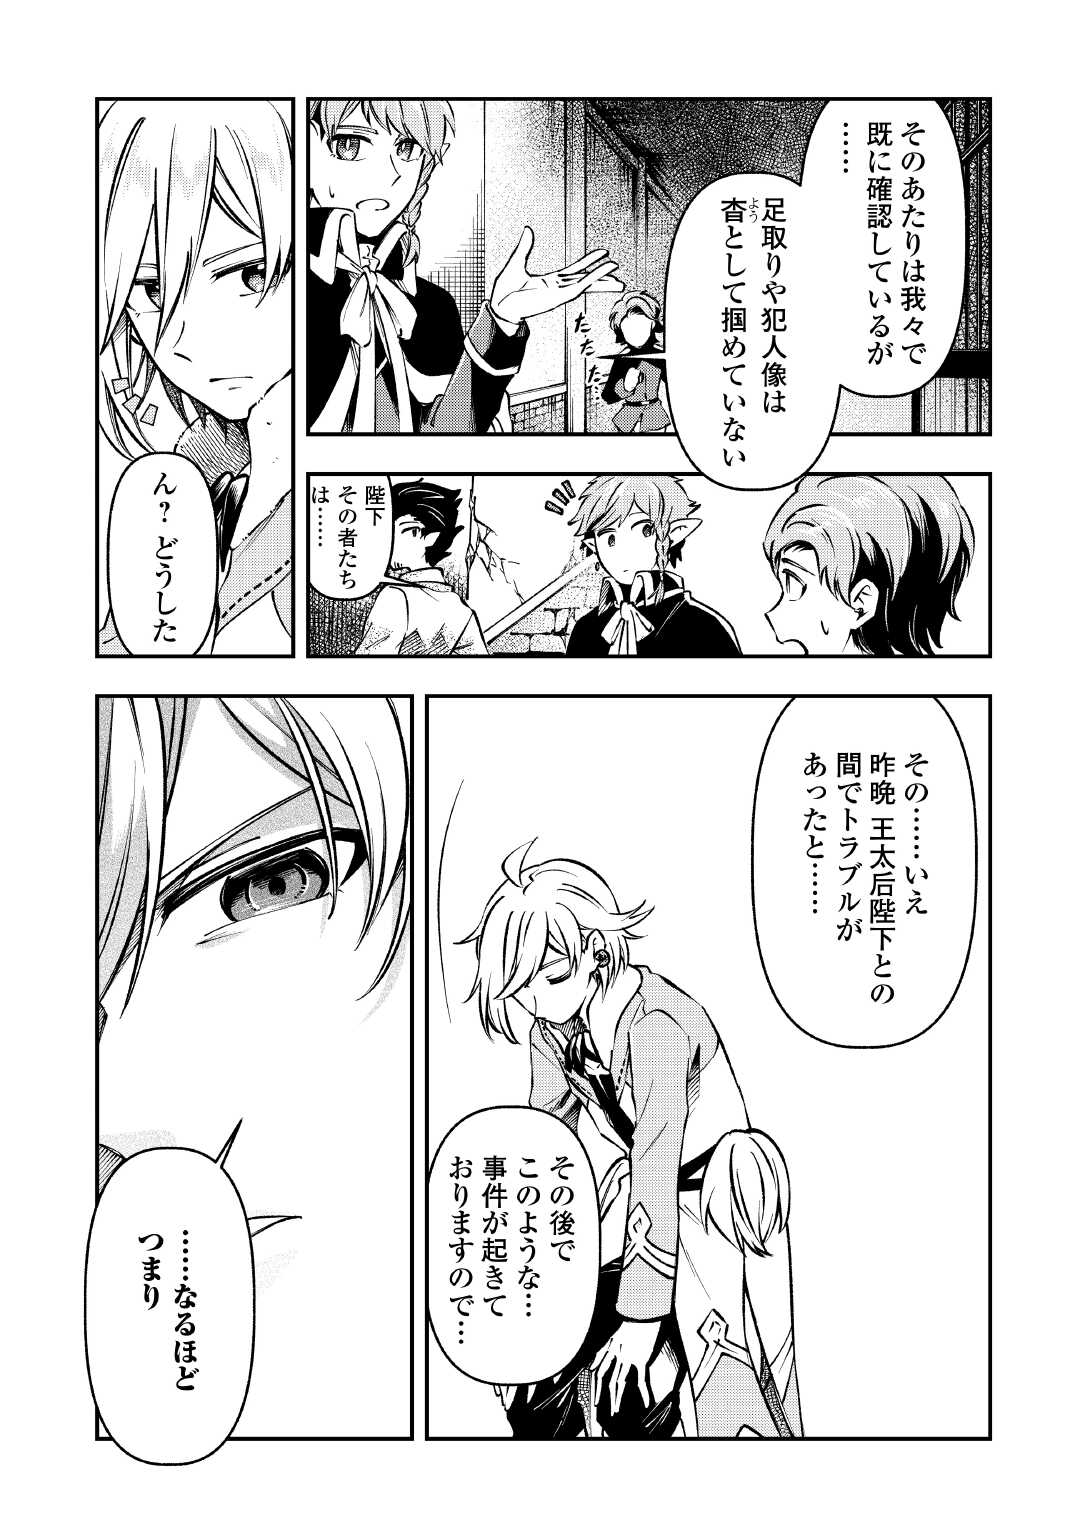 Osanago wa Saikyou no Tamer da to Kizuiteimasen! - Chapter 12 - Page 3